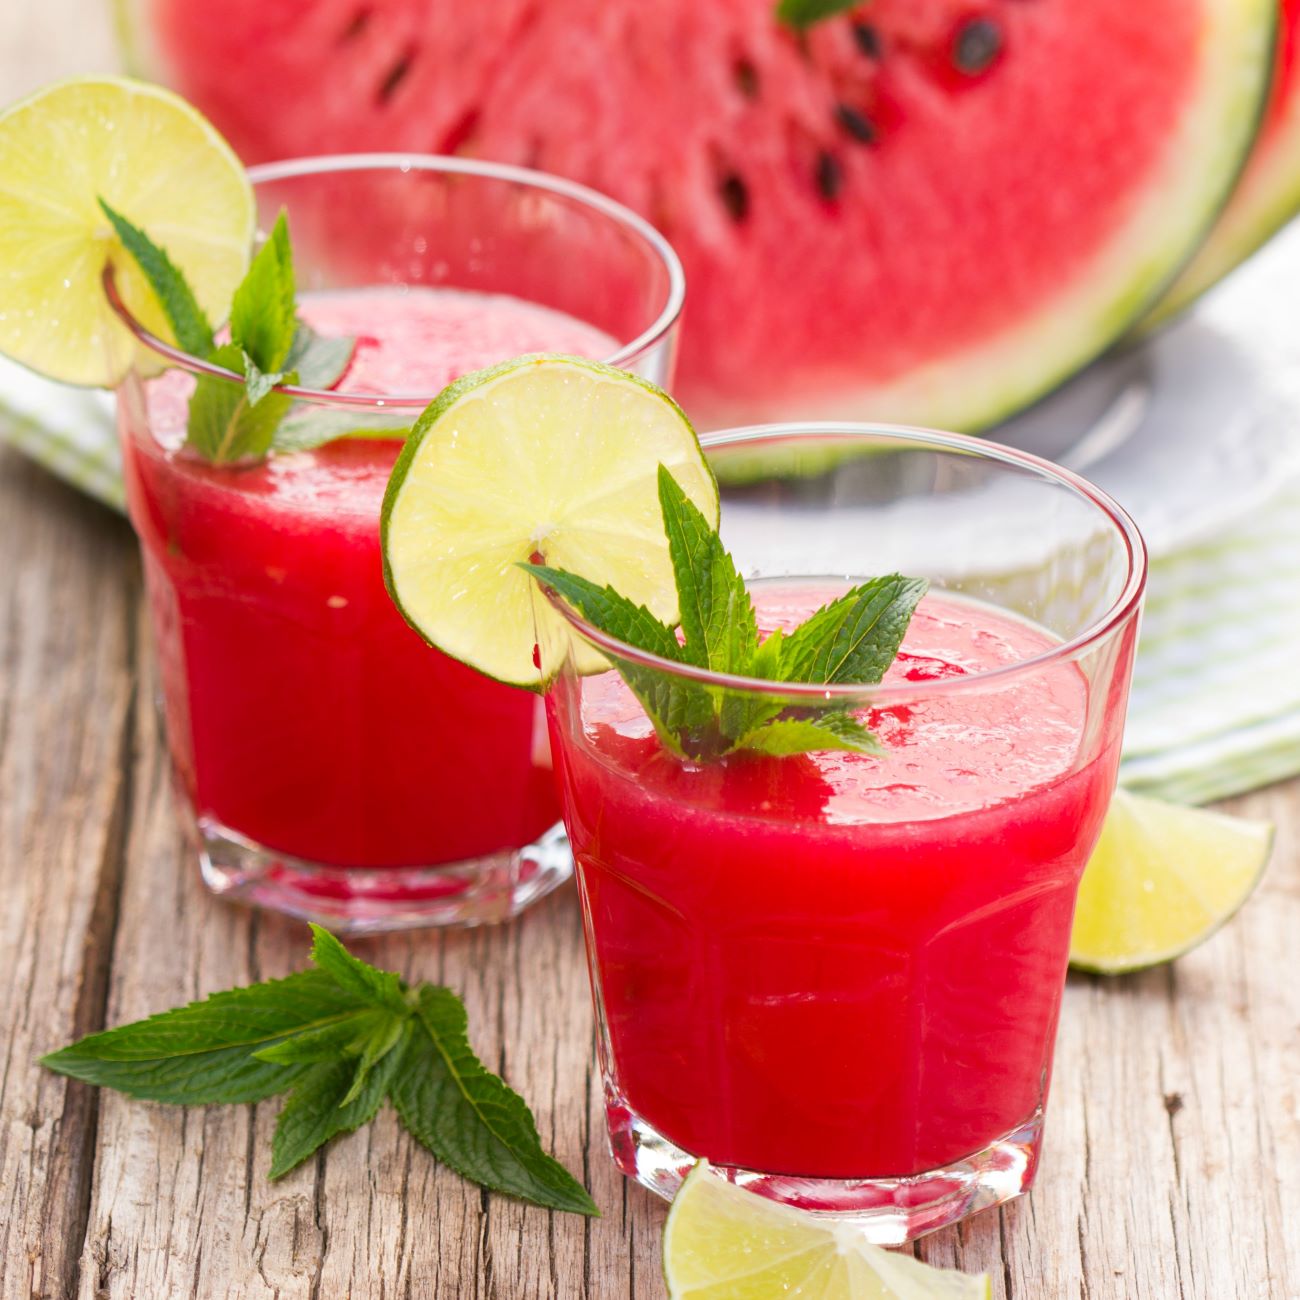 Wassermelonen-Frappé wird in kleinen Gläsern garniert mit Minze serviert